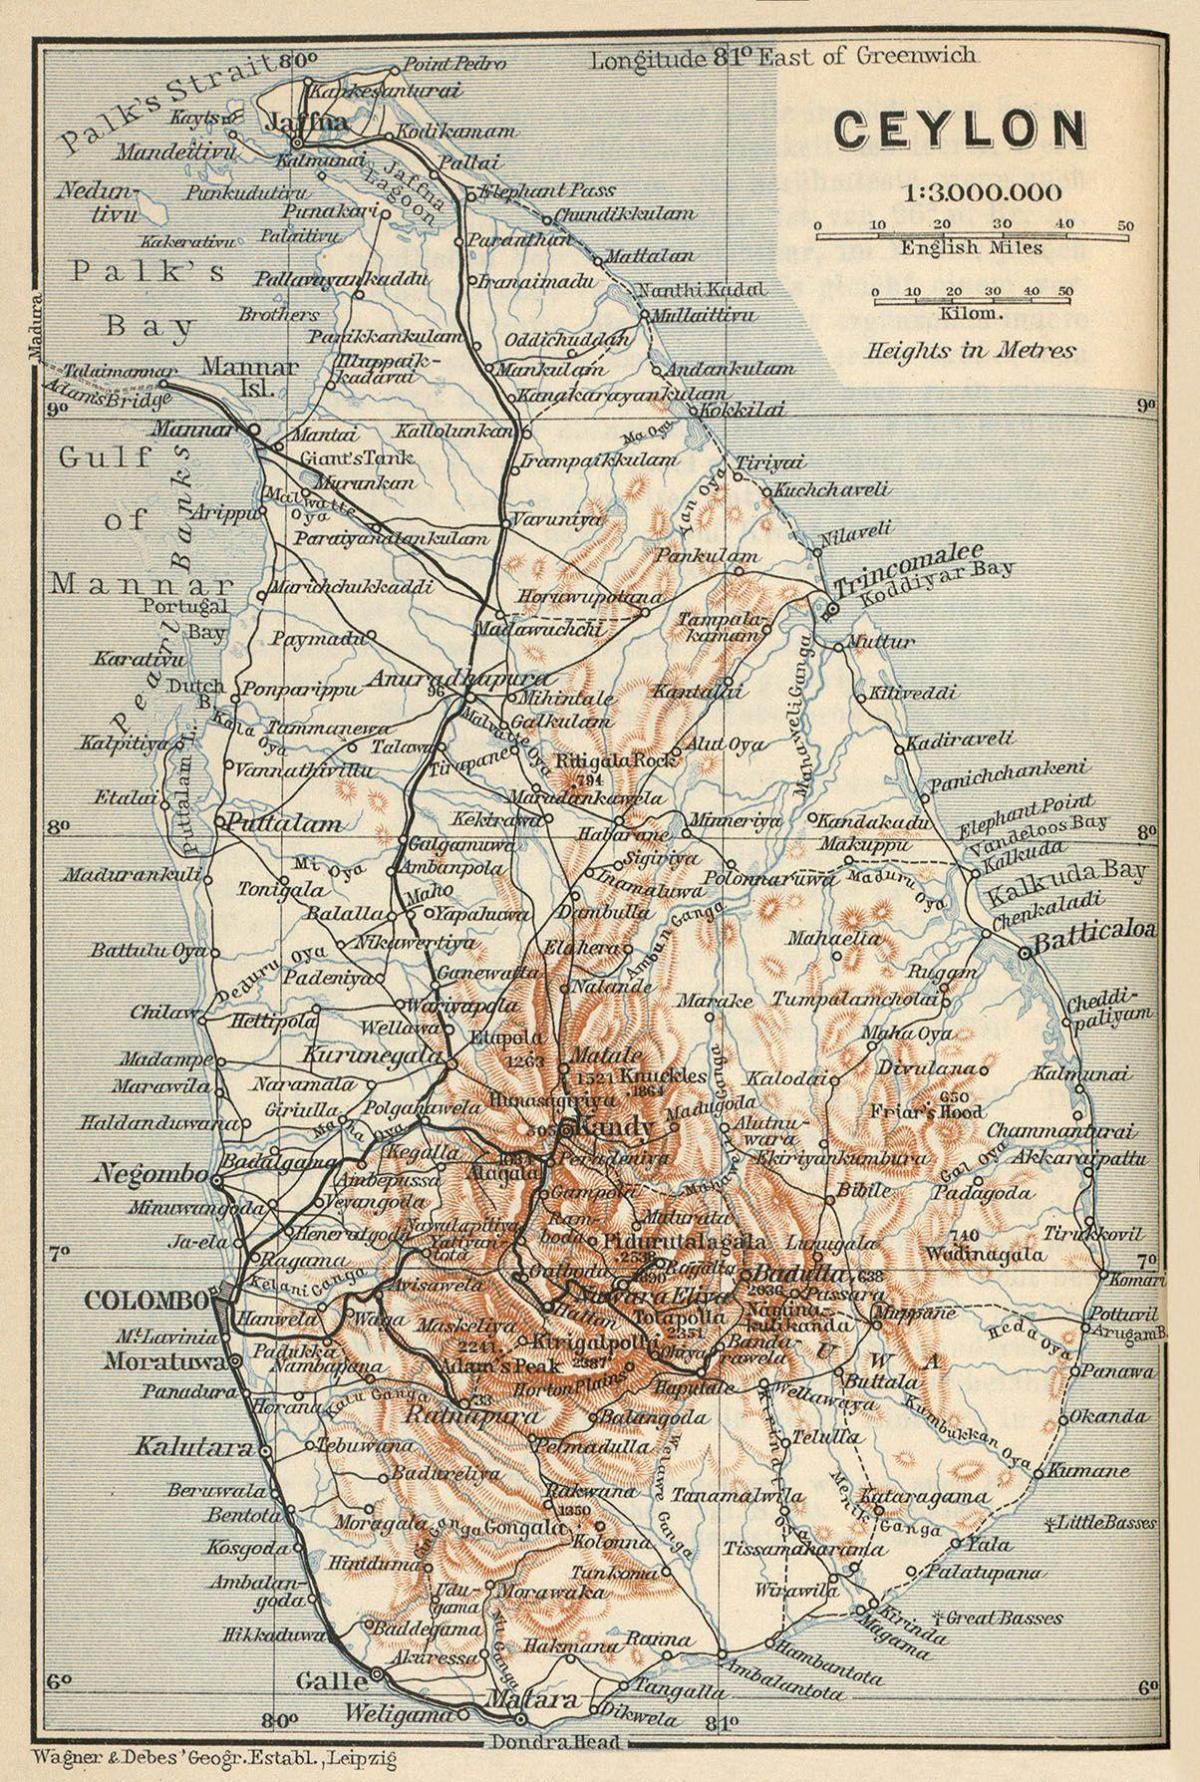 Ceylon on map